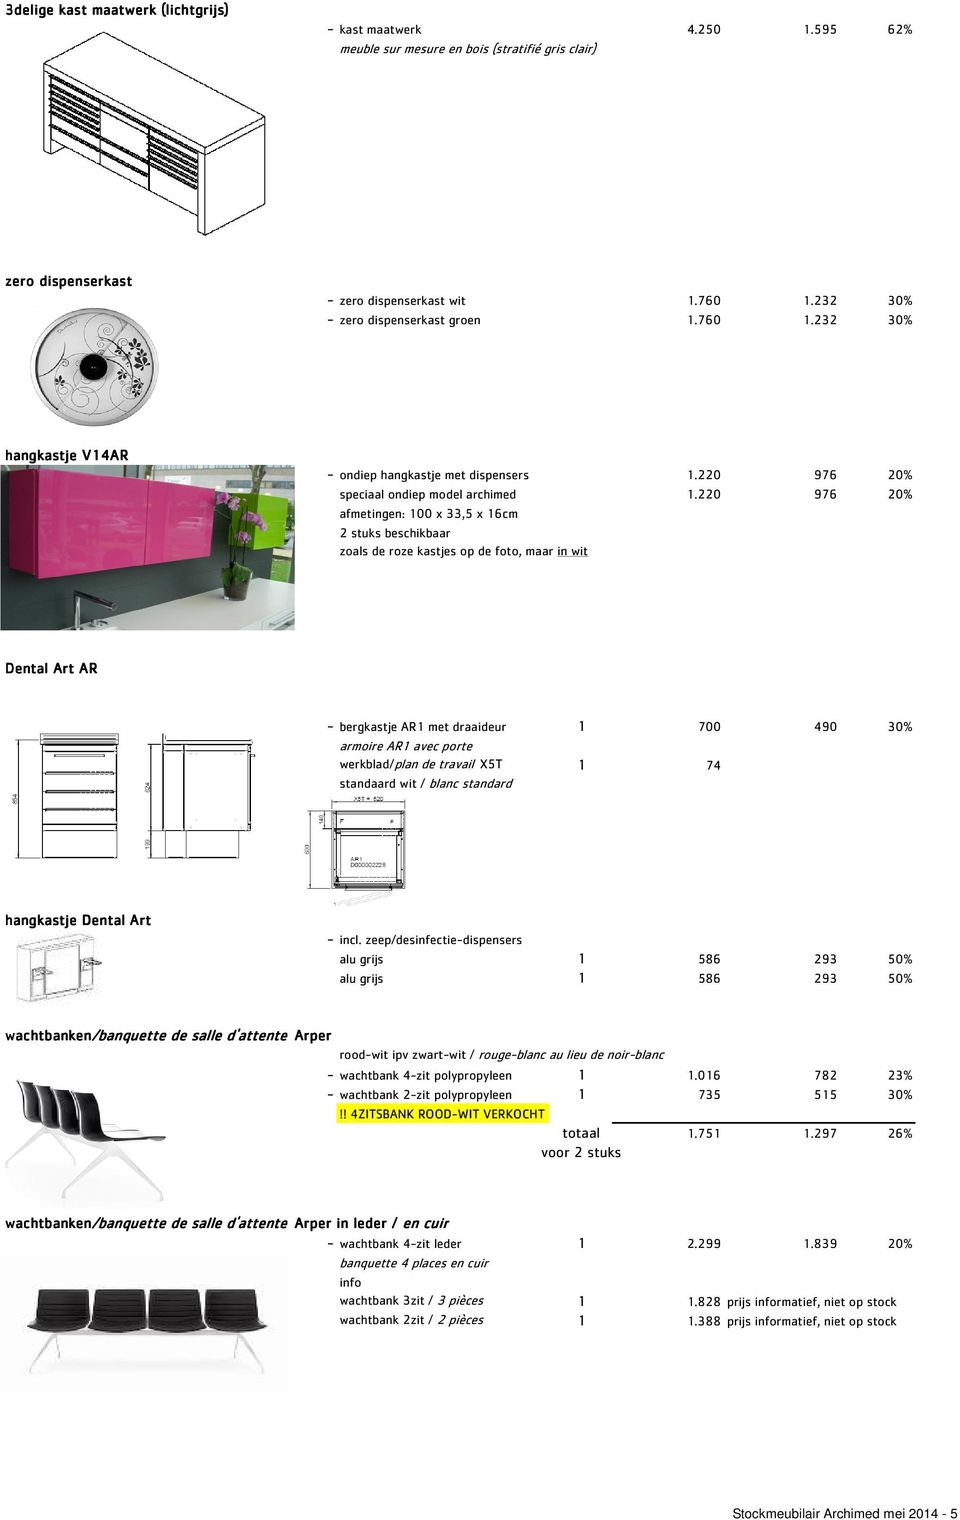 220 976 20% afmetingen: 100 x 33,5 x 16cm 2 stuks beschikbaar zoals de roze kastjes op de foto, maar in wit Dental Art AR - bergkastje AR1 met draaideur 1 700 490 30% armoire AR1 avec porte